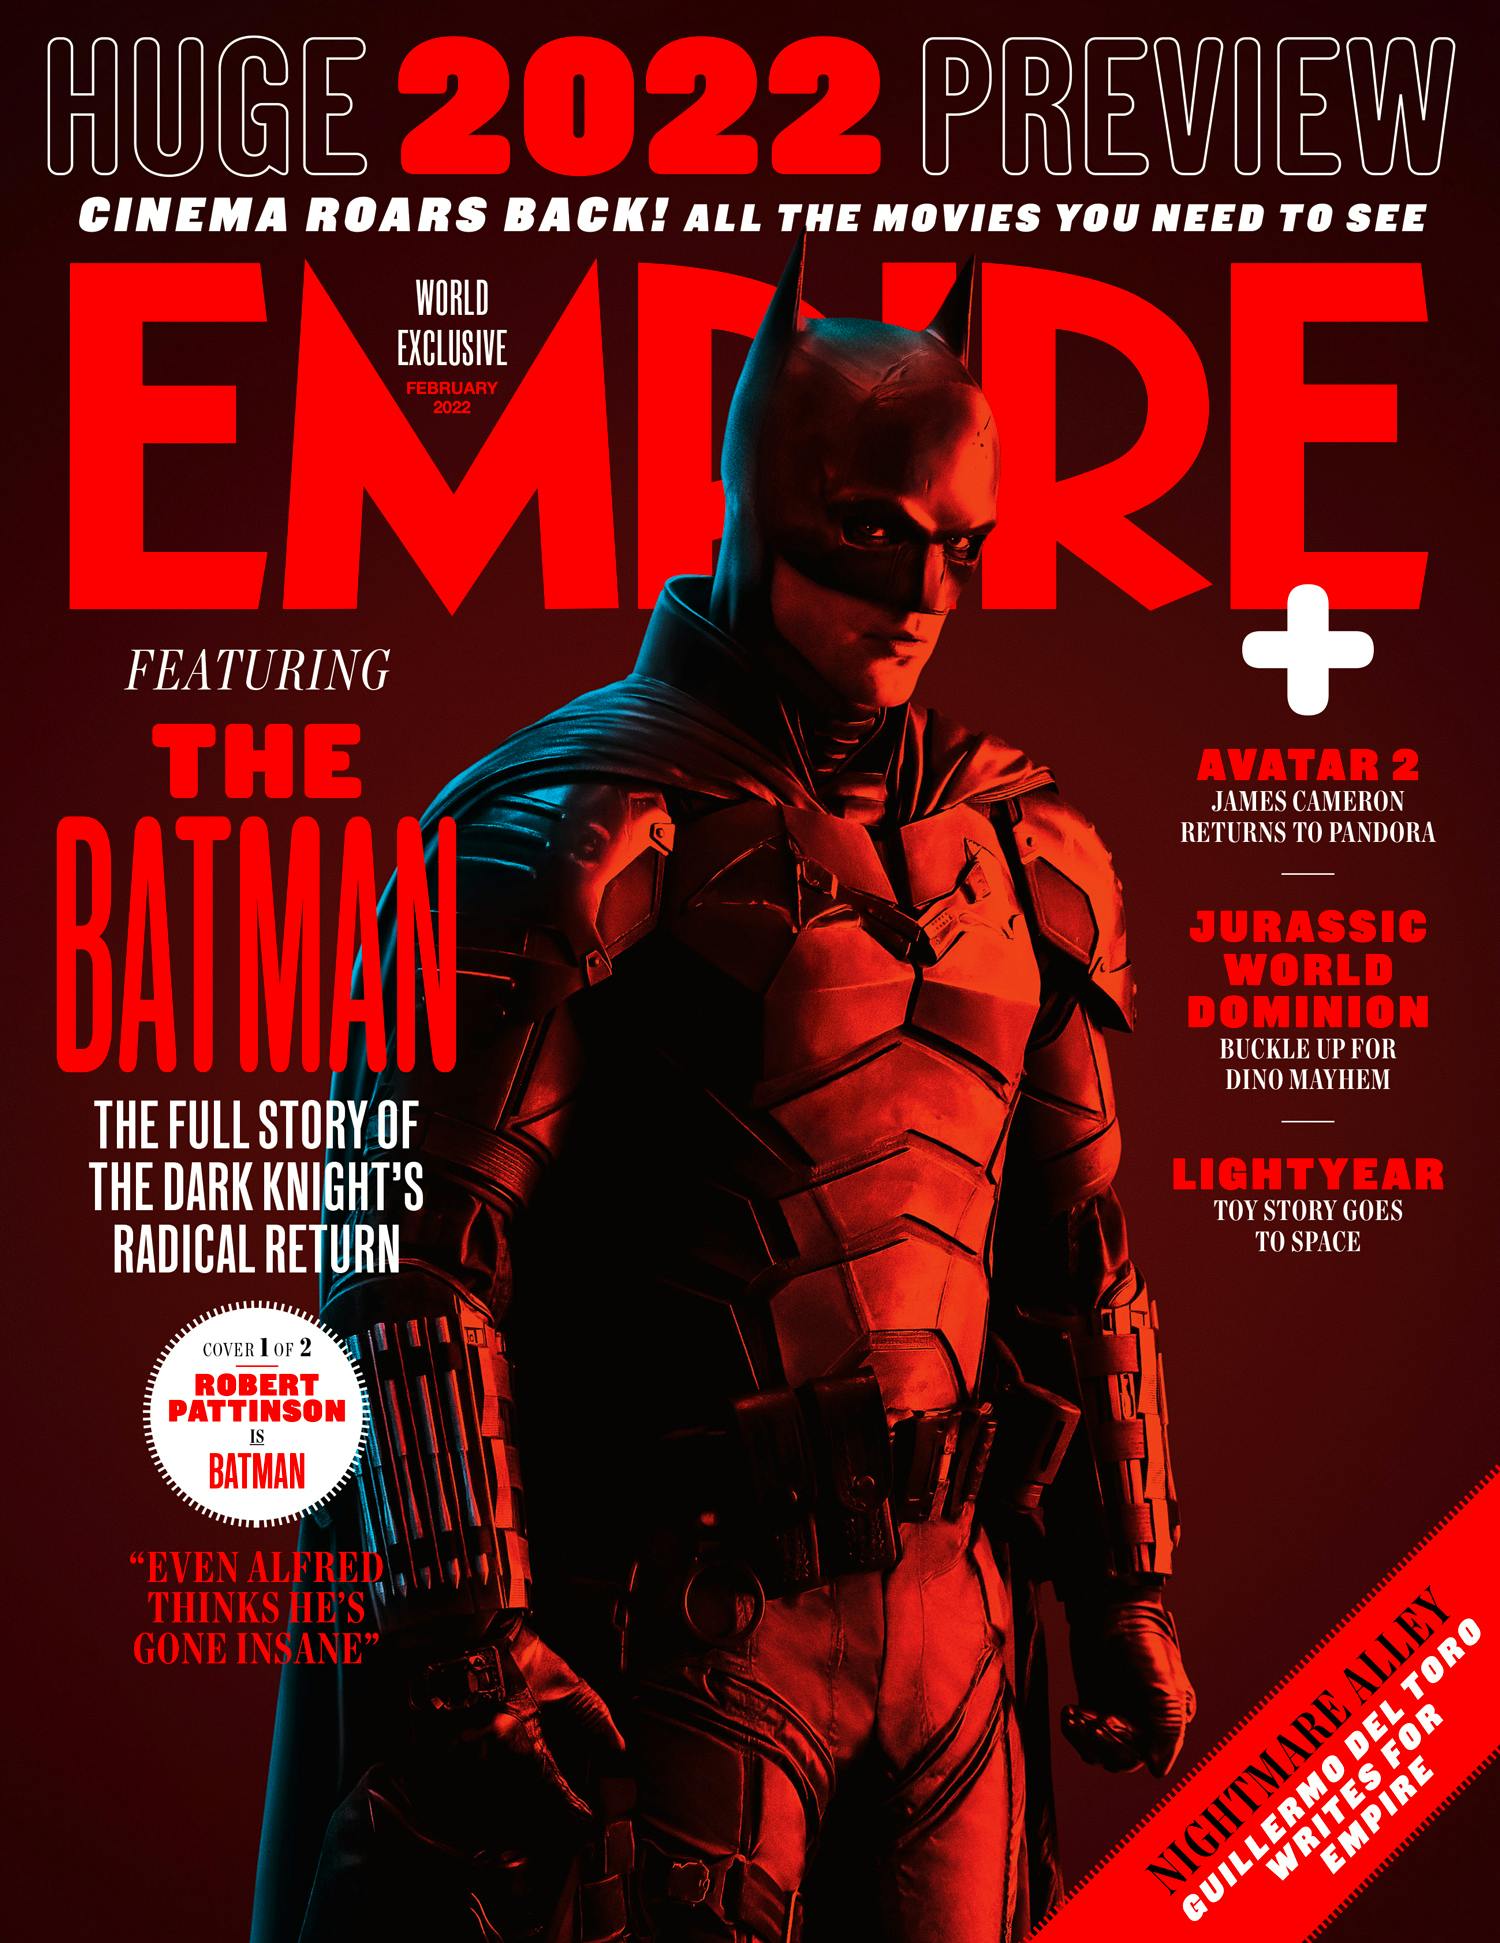 Review The Batman  Bom tấn gai góc đen tối nhất của Warner Bros trong  năm 2022